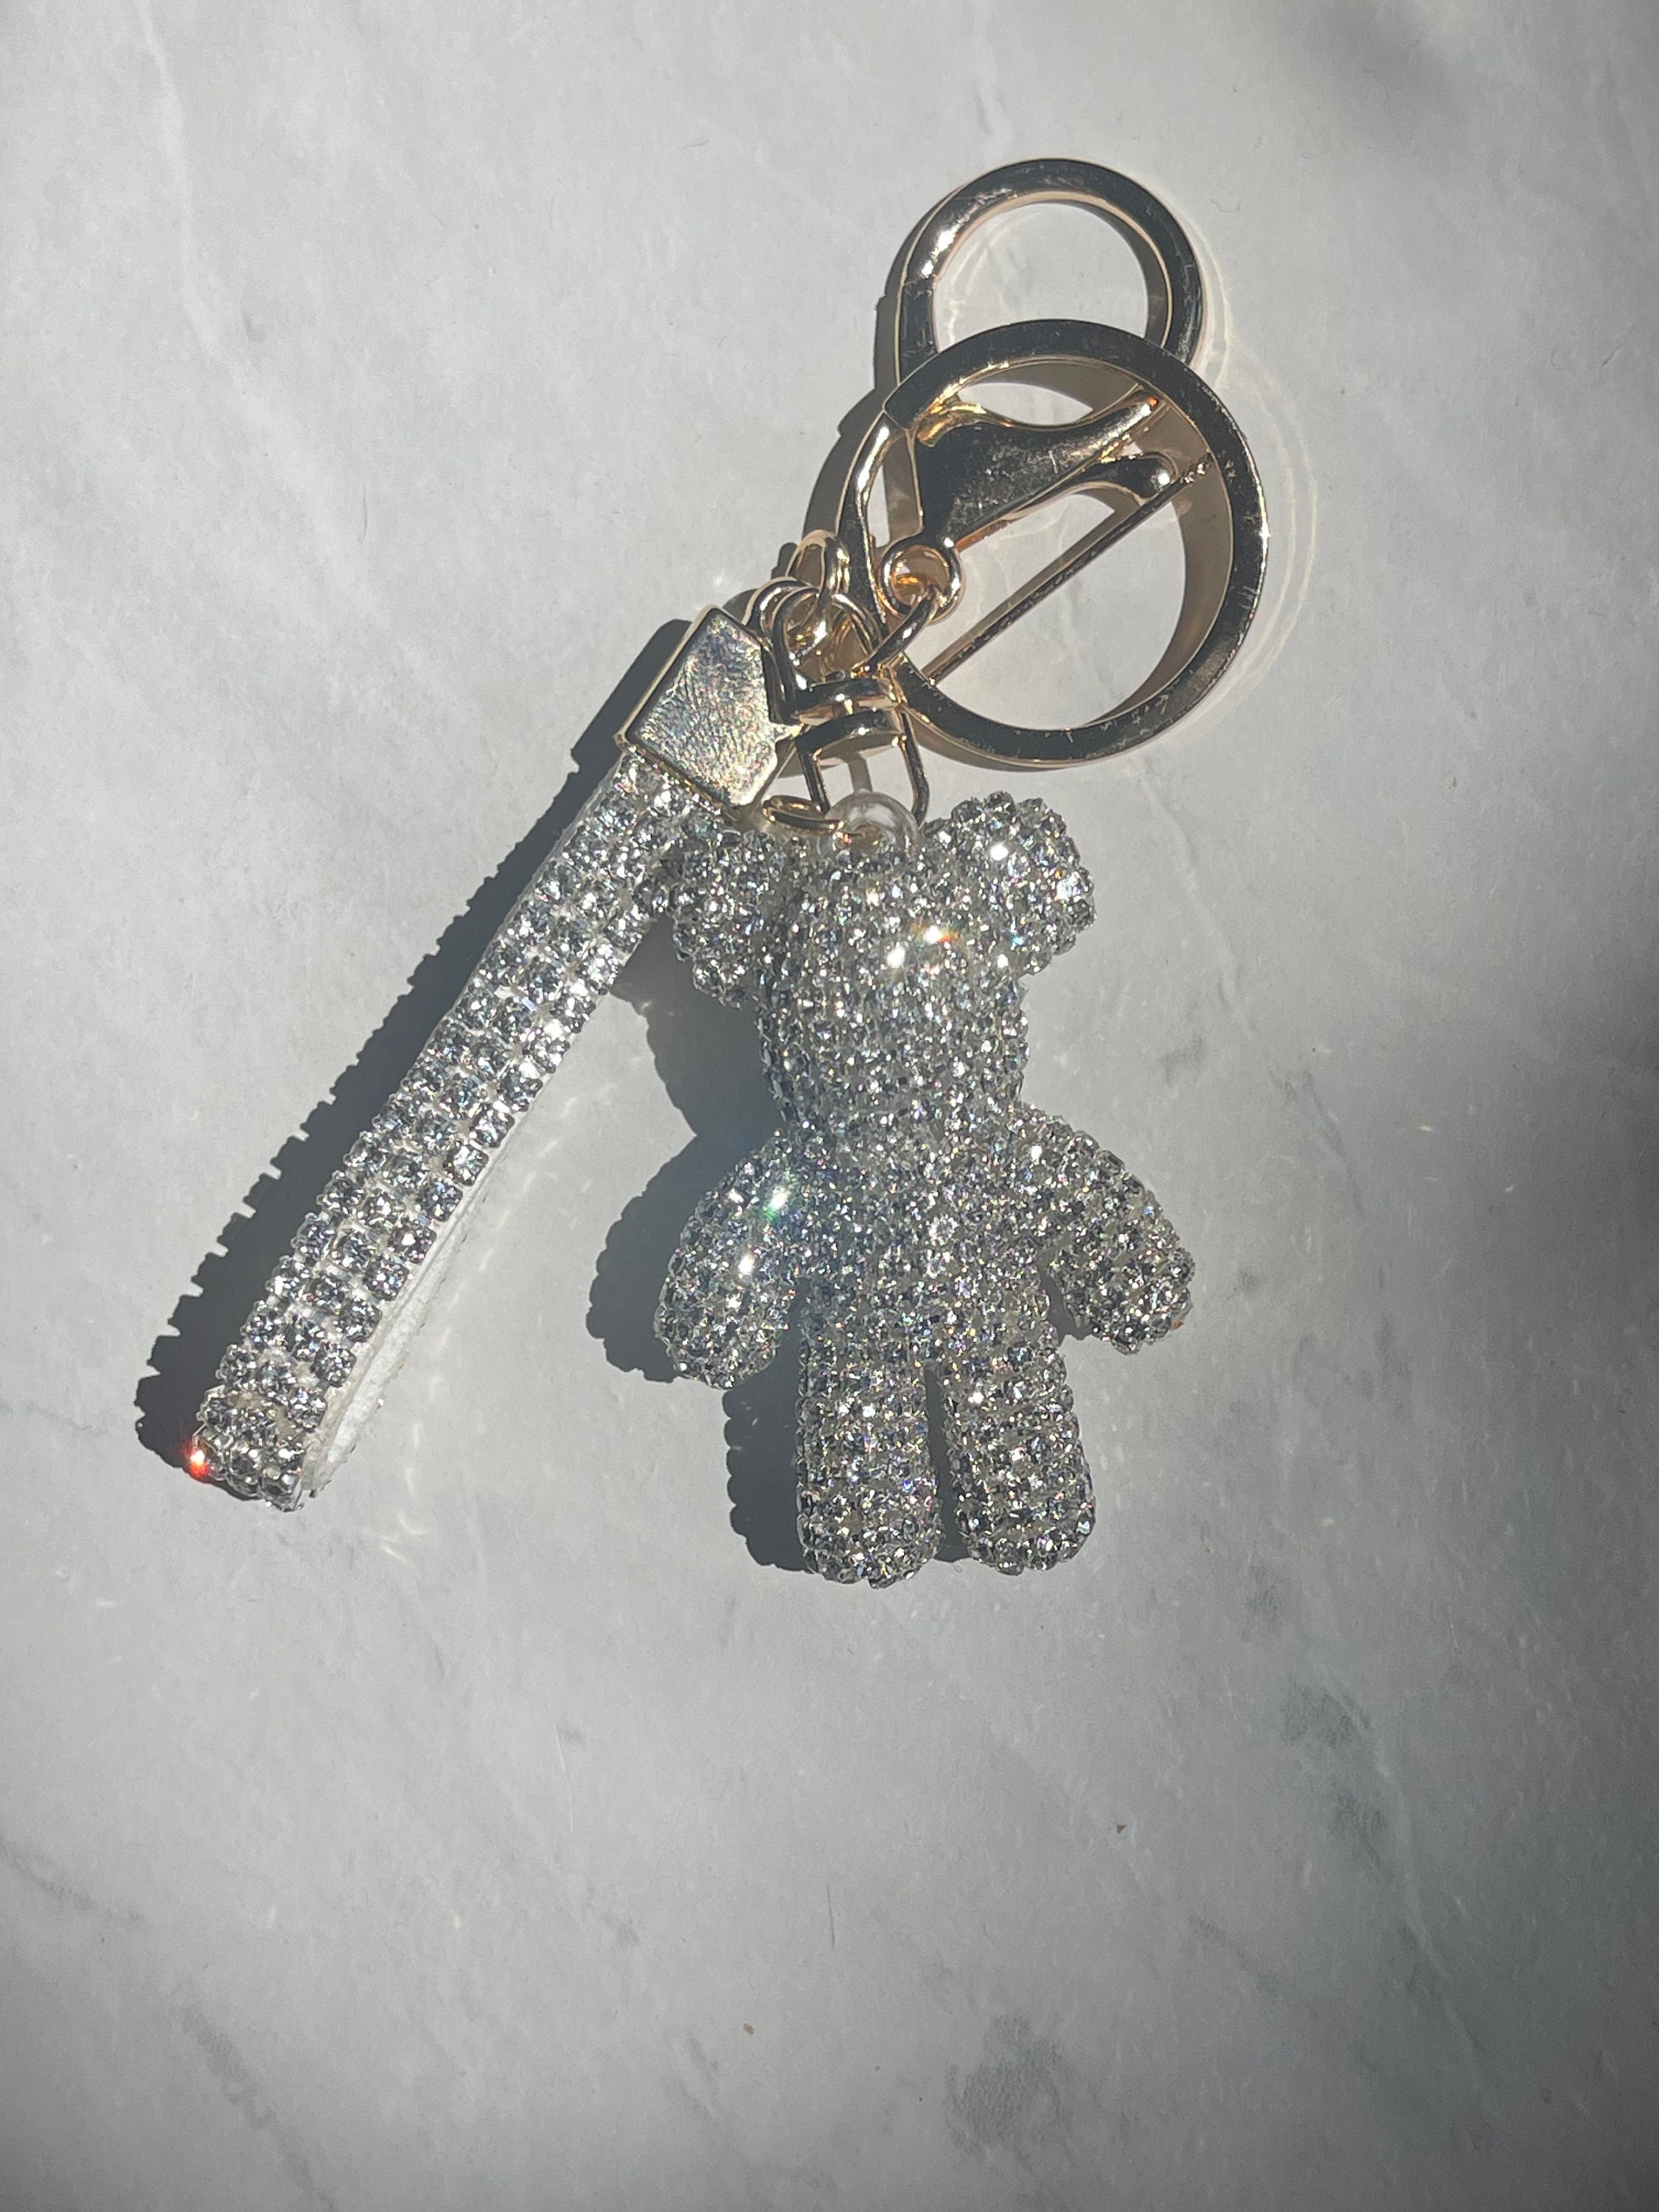 Luxury Keychain With Bear Lanyard for Bag Luggage Car Keys 